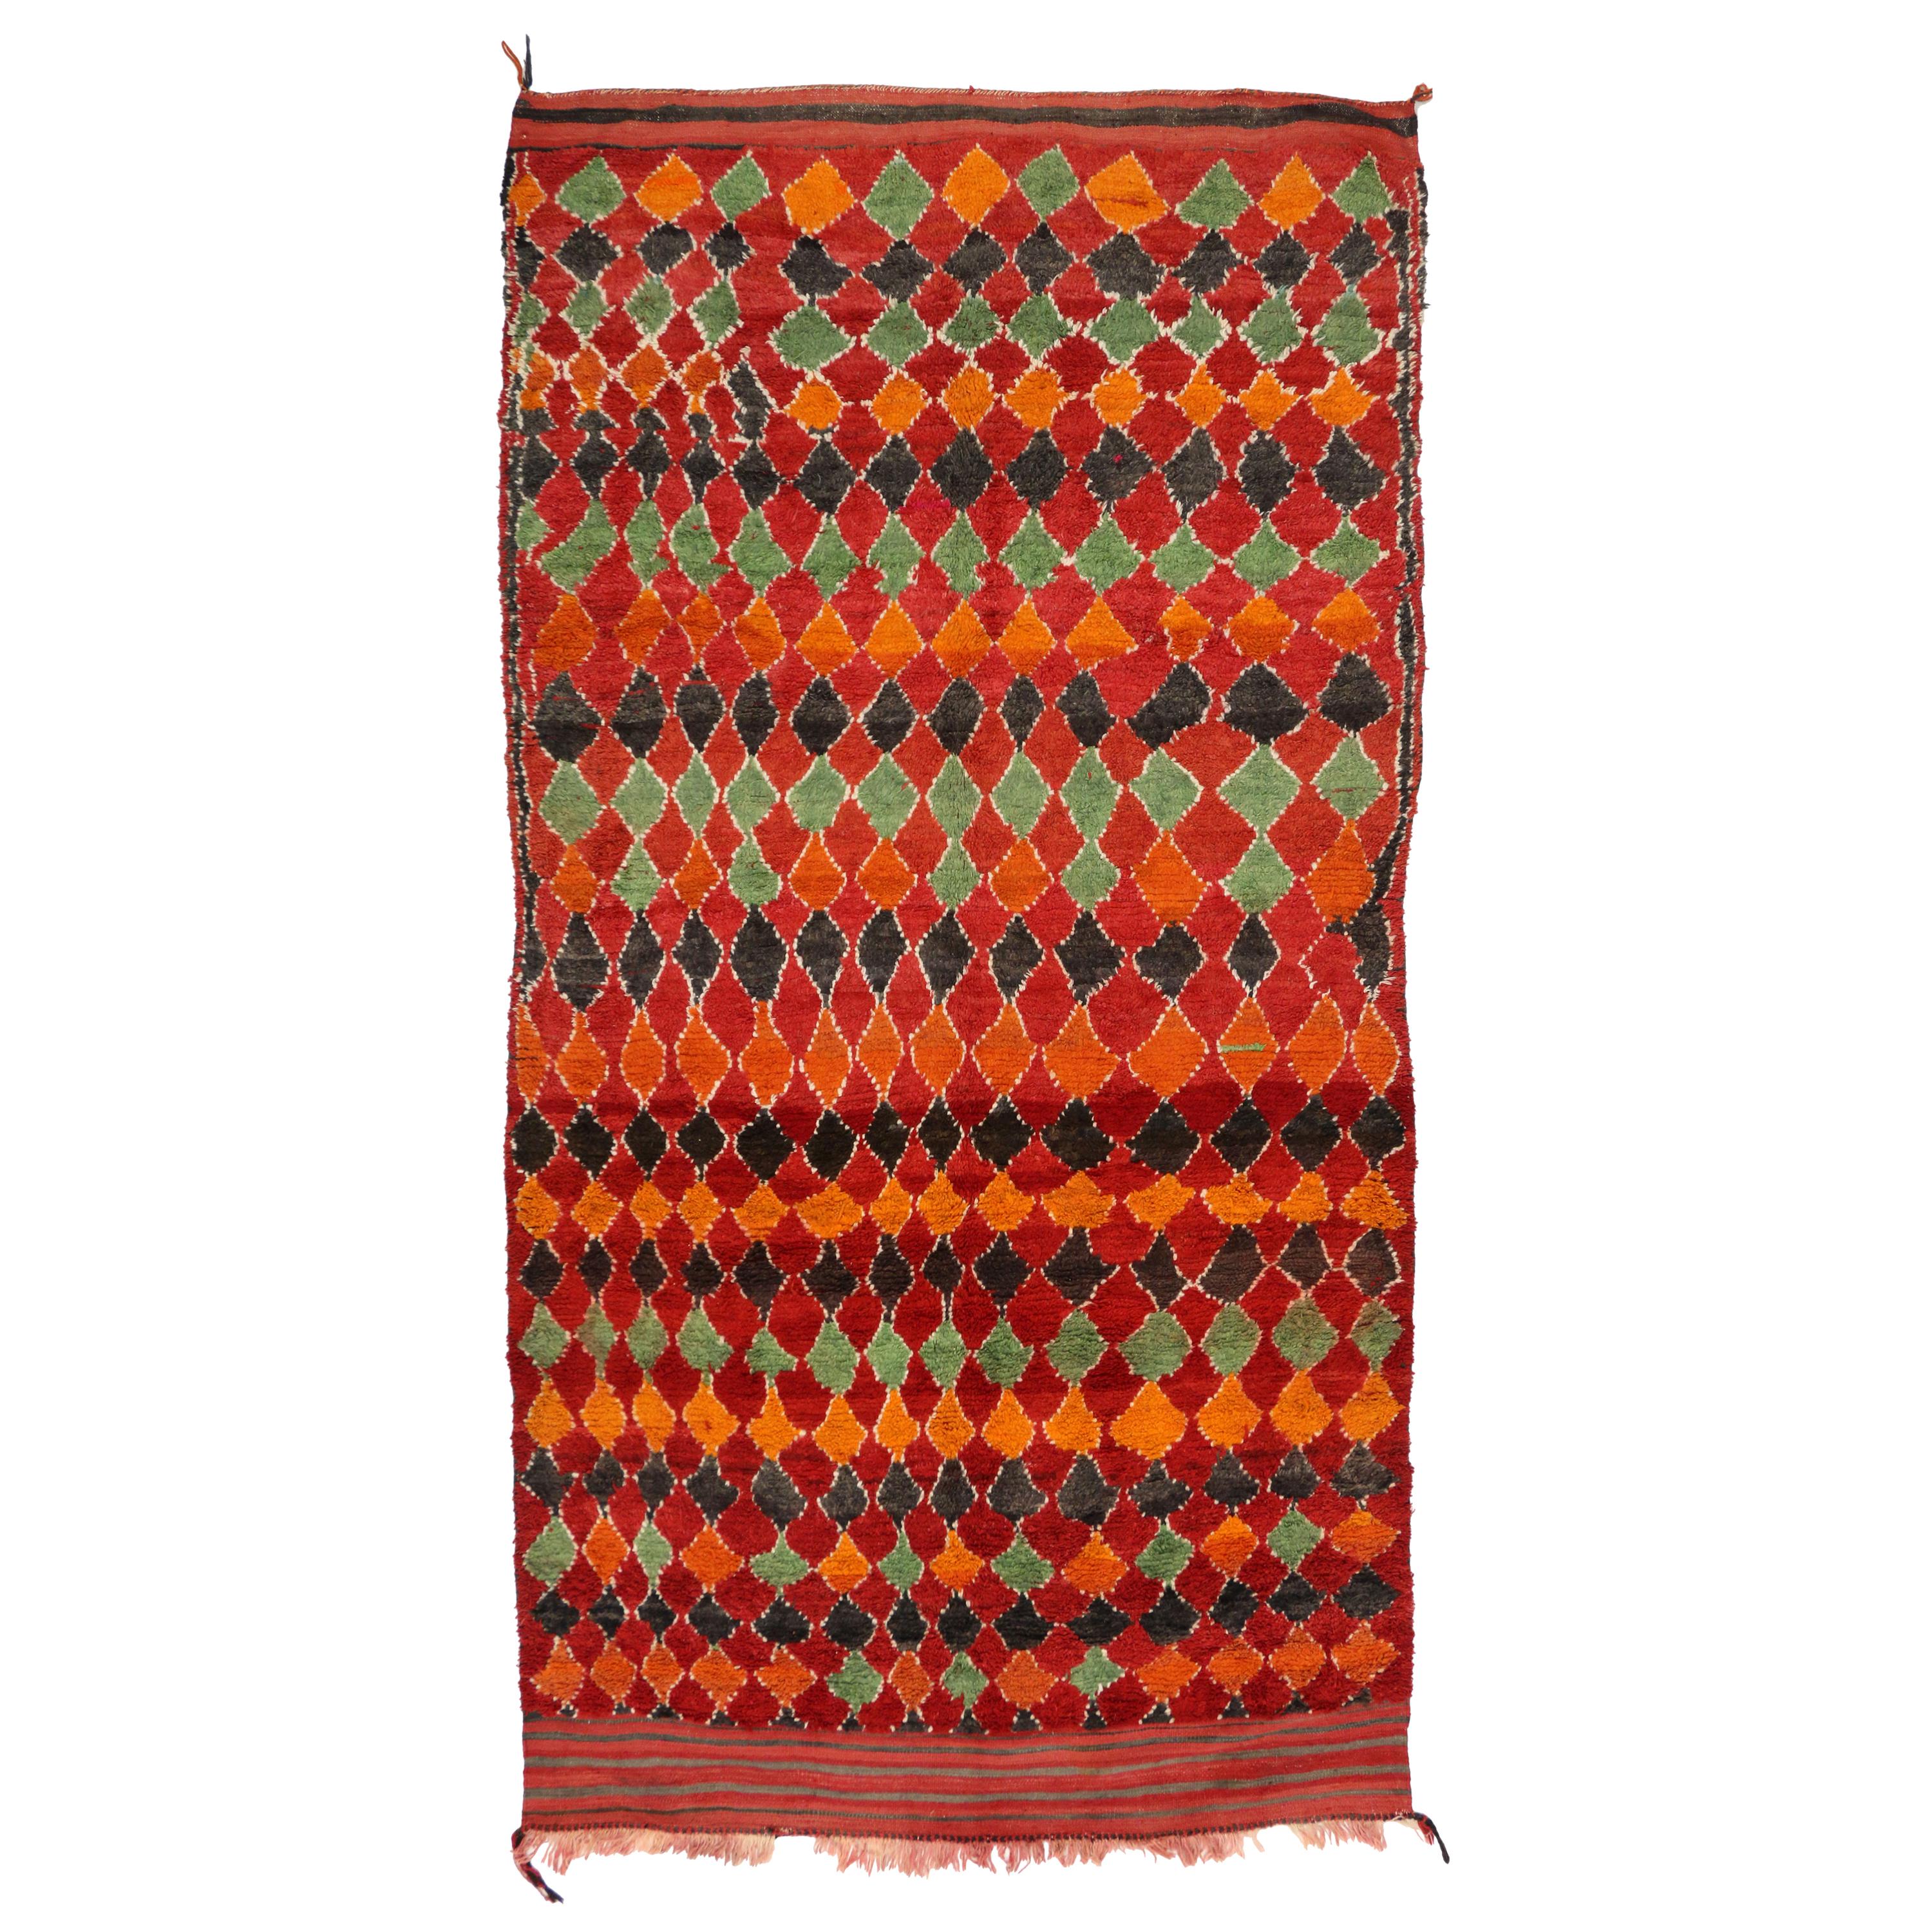 Tapis berbère marocain rouge vintage avec motif de diamants et style tribal moderne